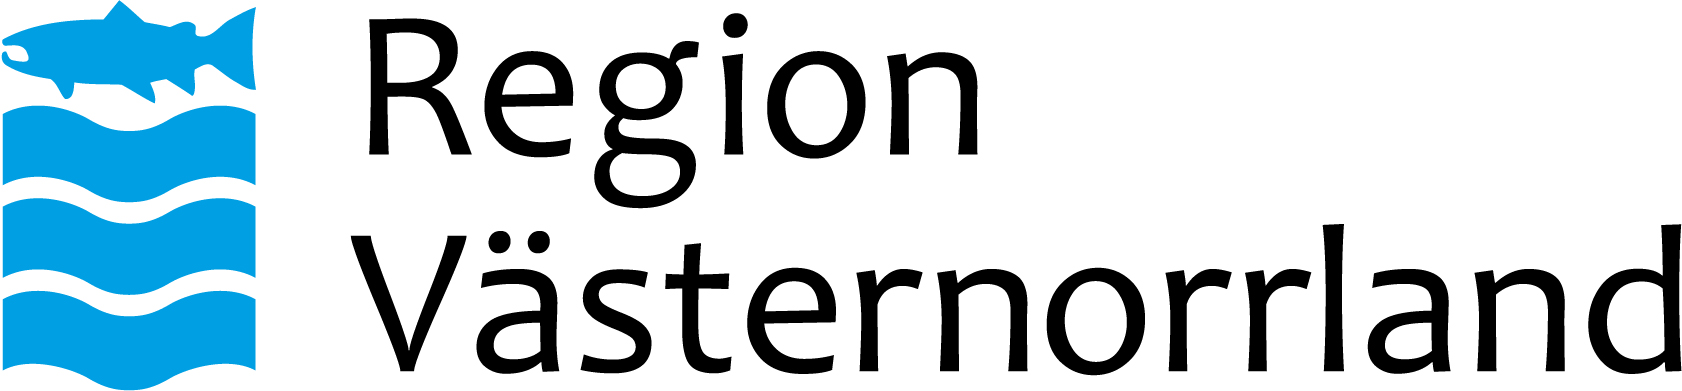 Region Västernorrland - Logotyper